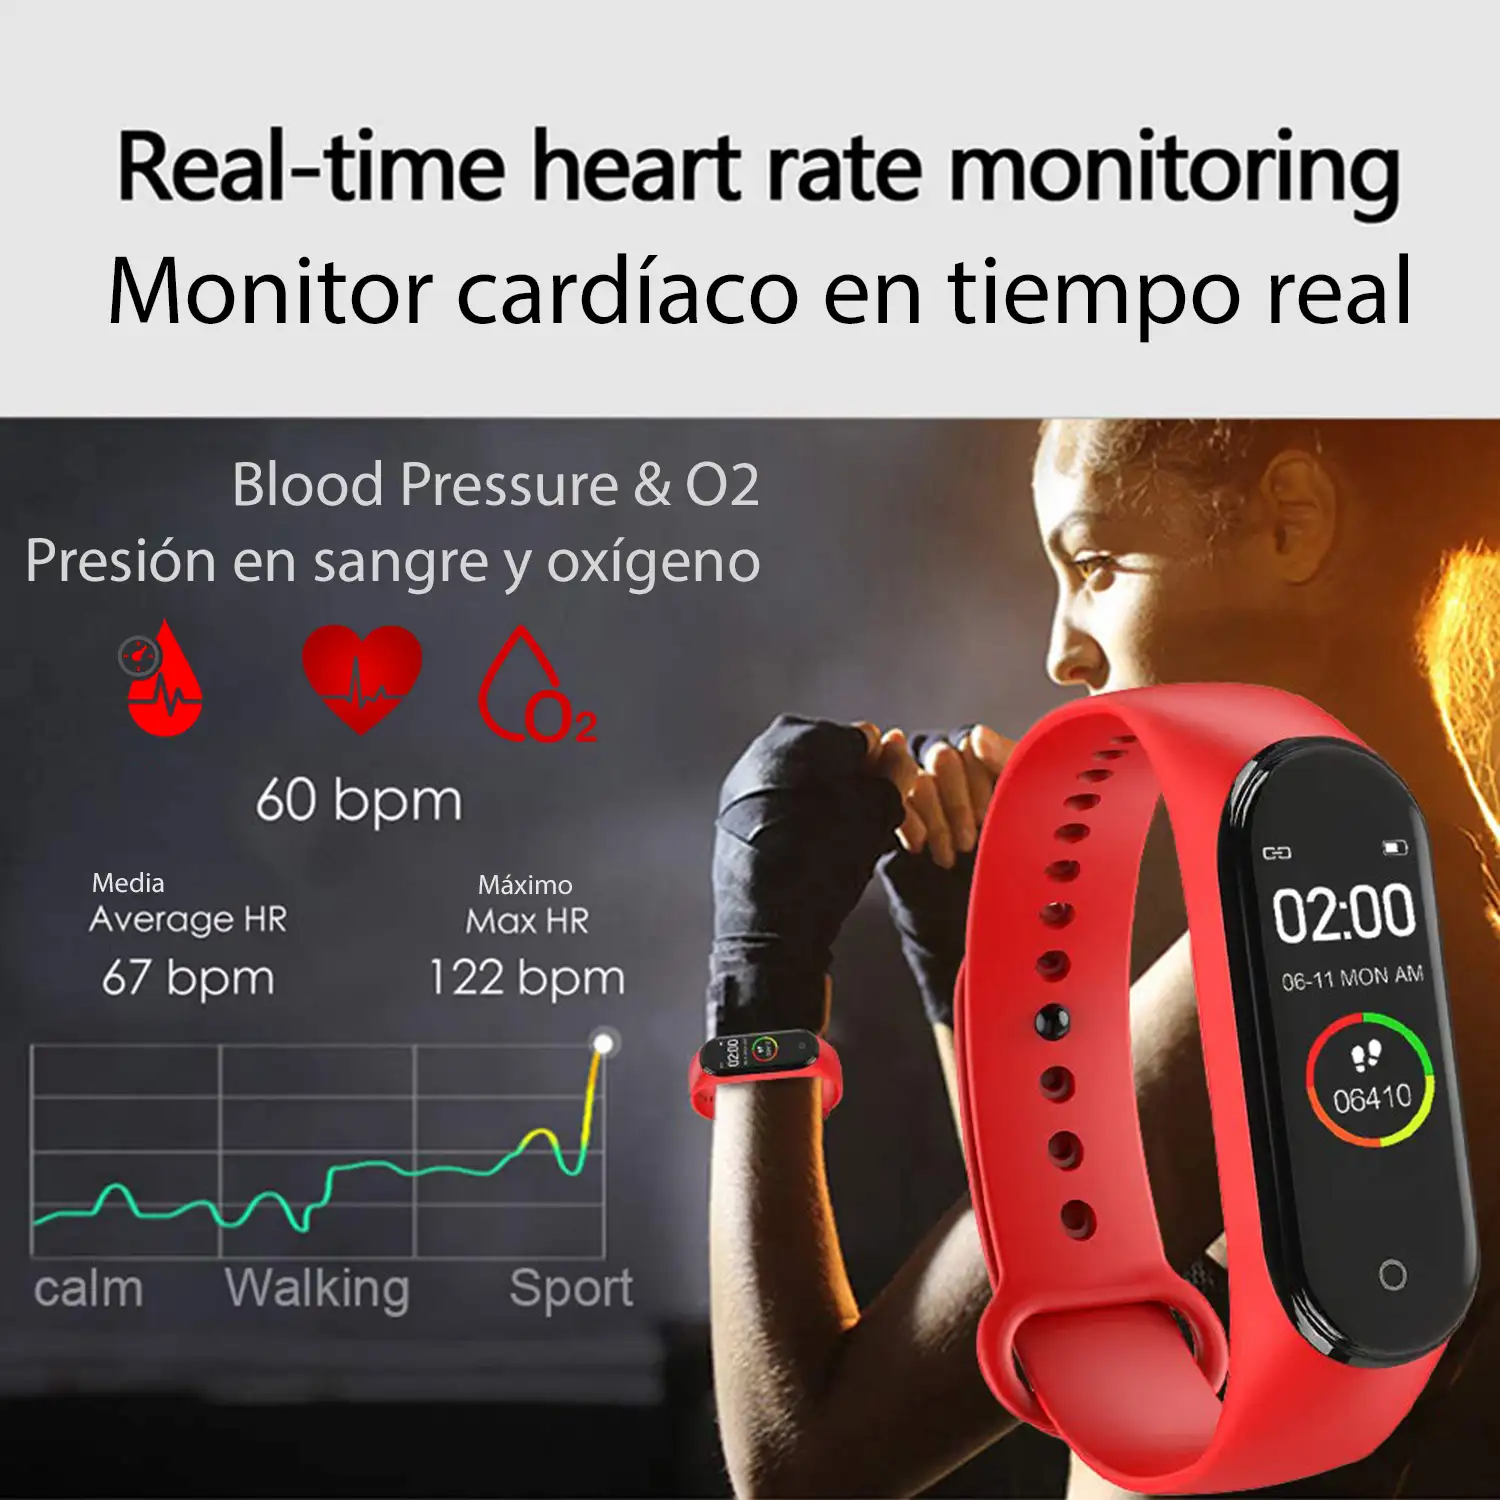 Brazalete inteligente Bluetooth AK-M4 PRO con medición de temperatura corporal, monitor cardiaco, monitor de presion arterial y modo multideporte.